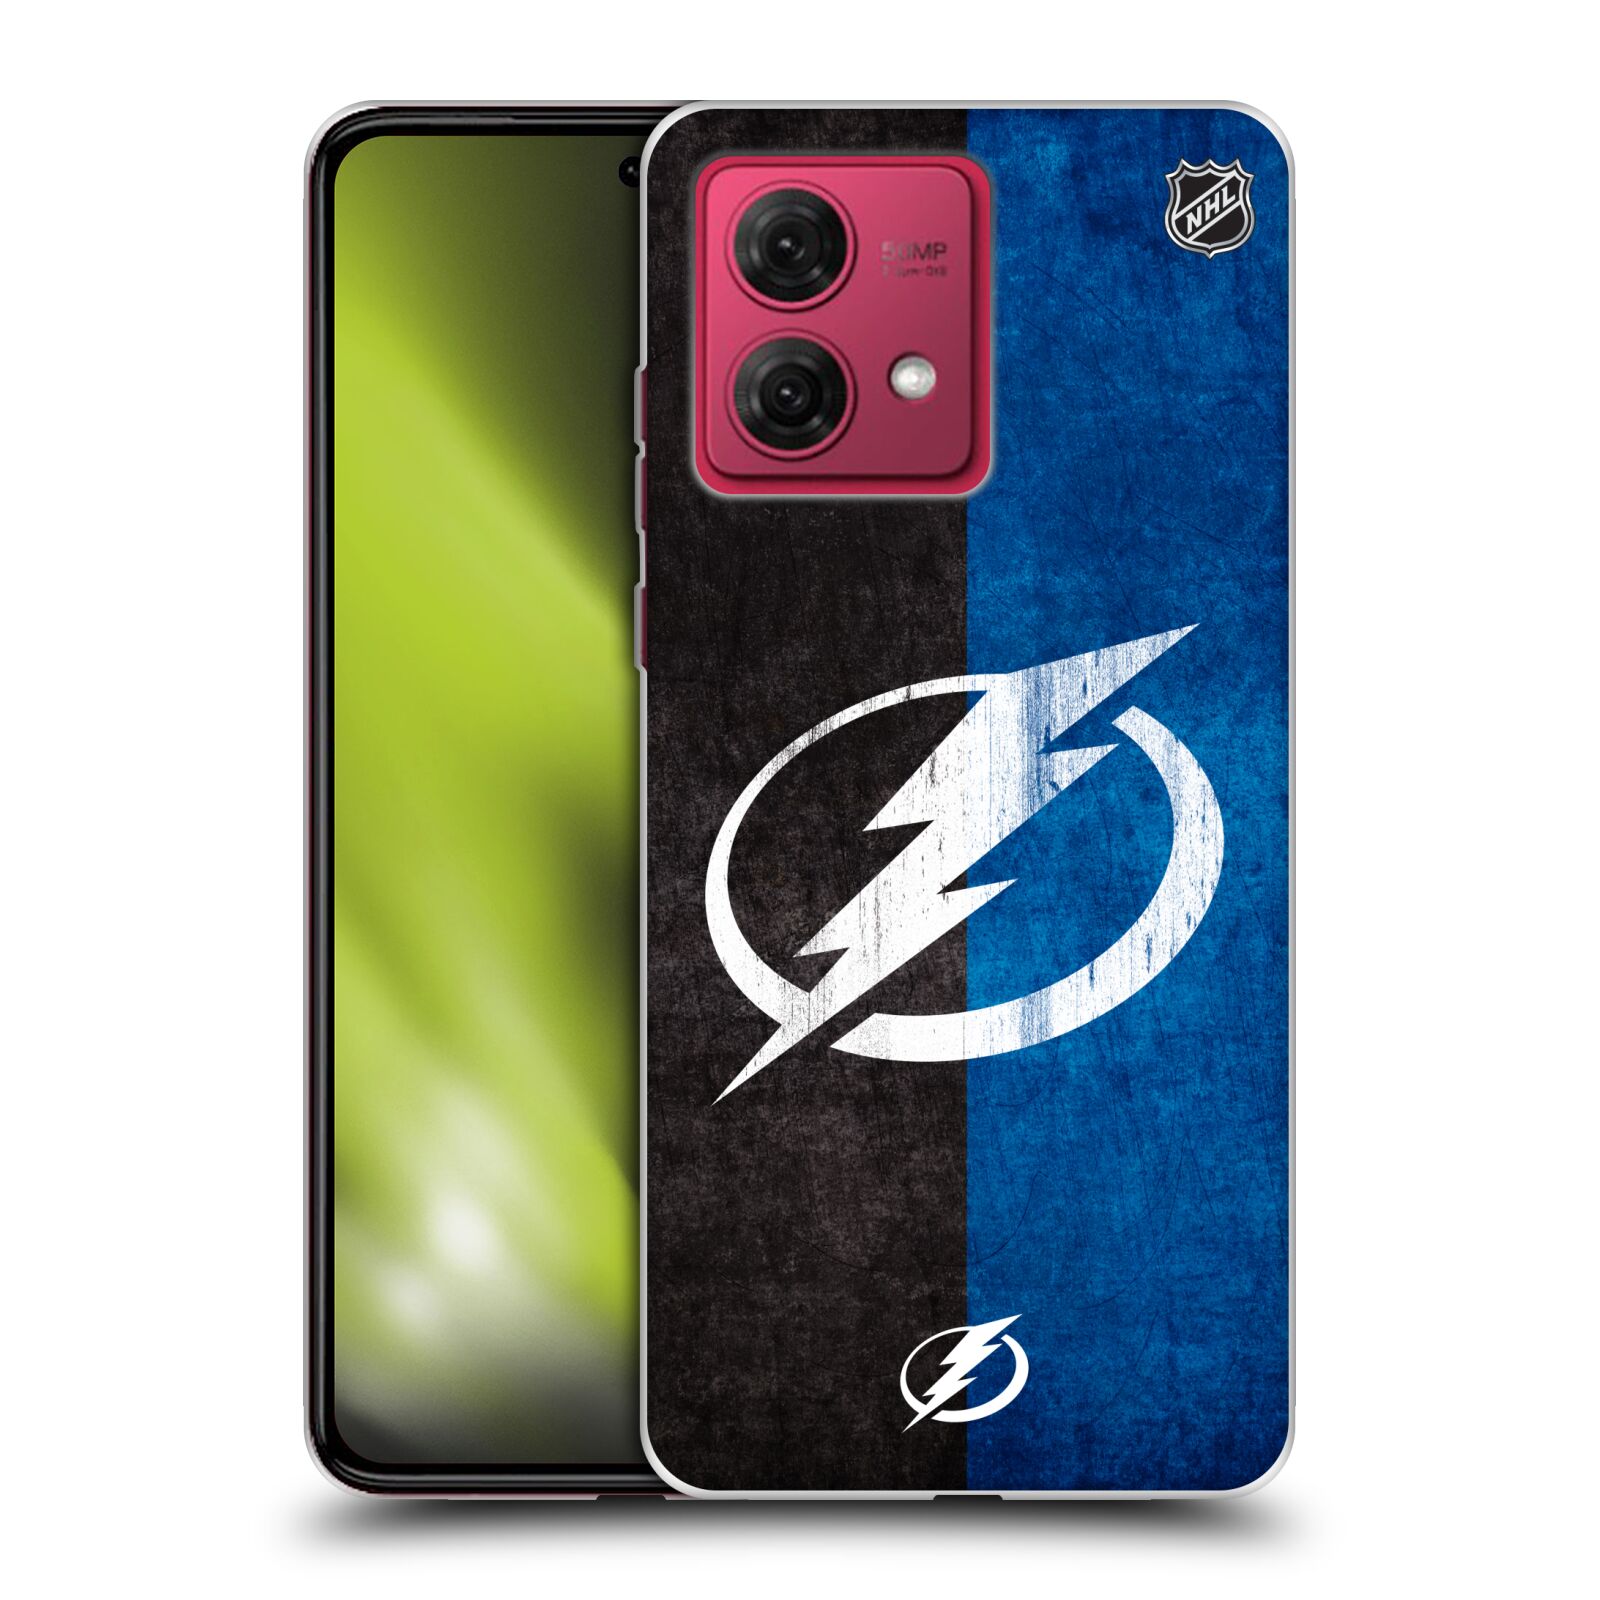 Silikonové pouzdro na mobil Motorola Moto G84 5G - NHL - Půlené logo Tampa Bay Lightning (Silikonový kryt, obal, pouzdro na mobilní telefon Motorola Moto G84 5G s licencovaným motivem NHL - Půlené logo Tampa Bay Lightning)